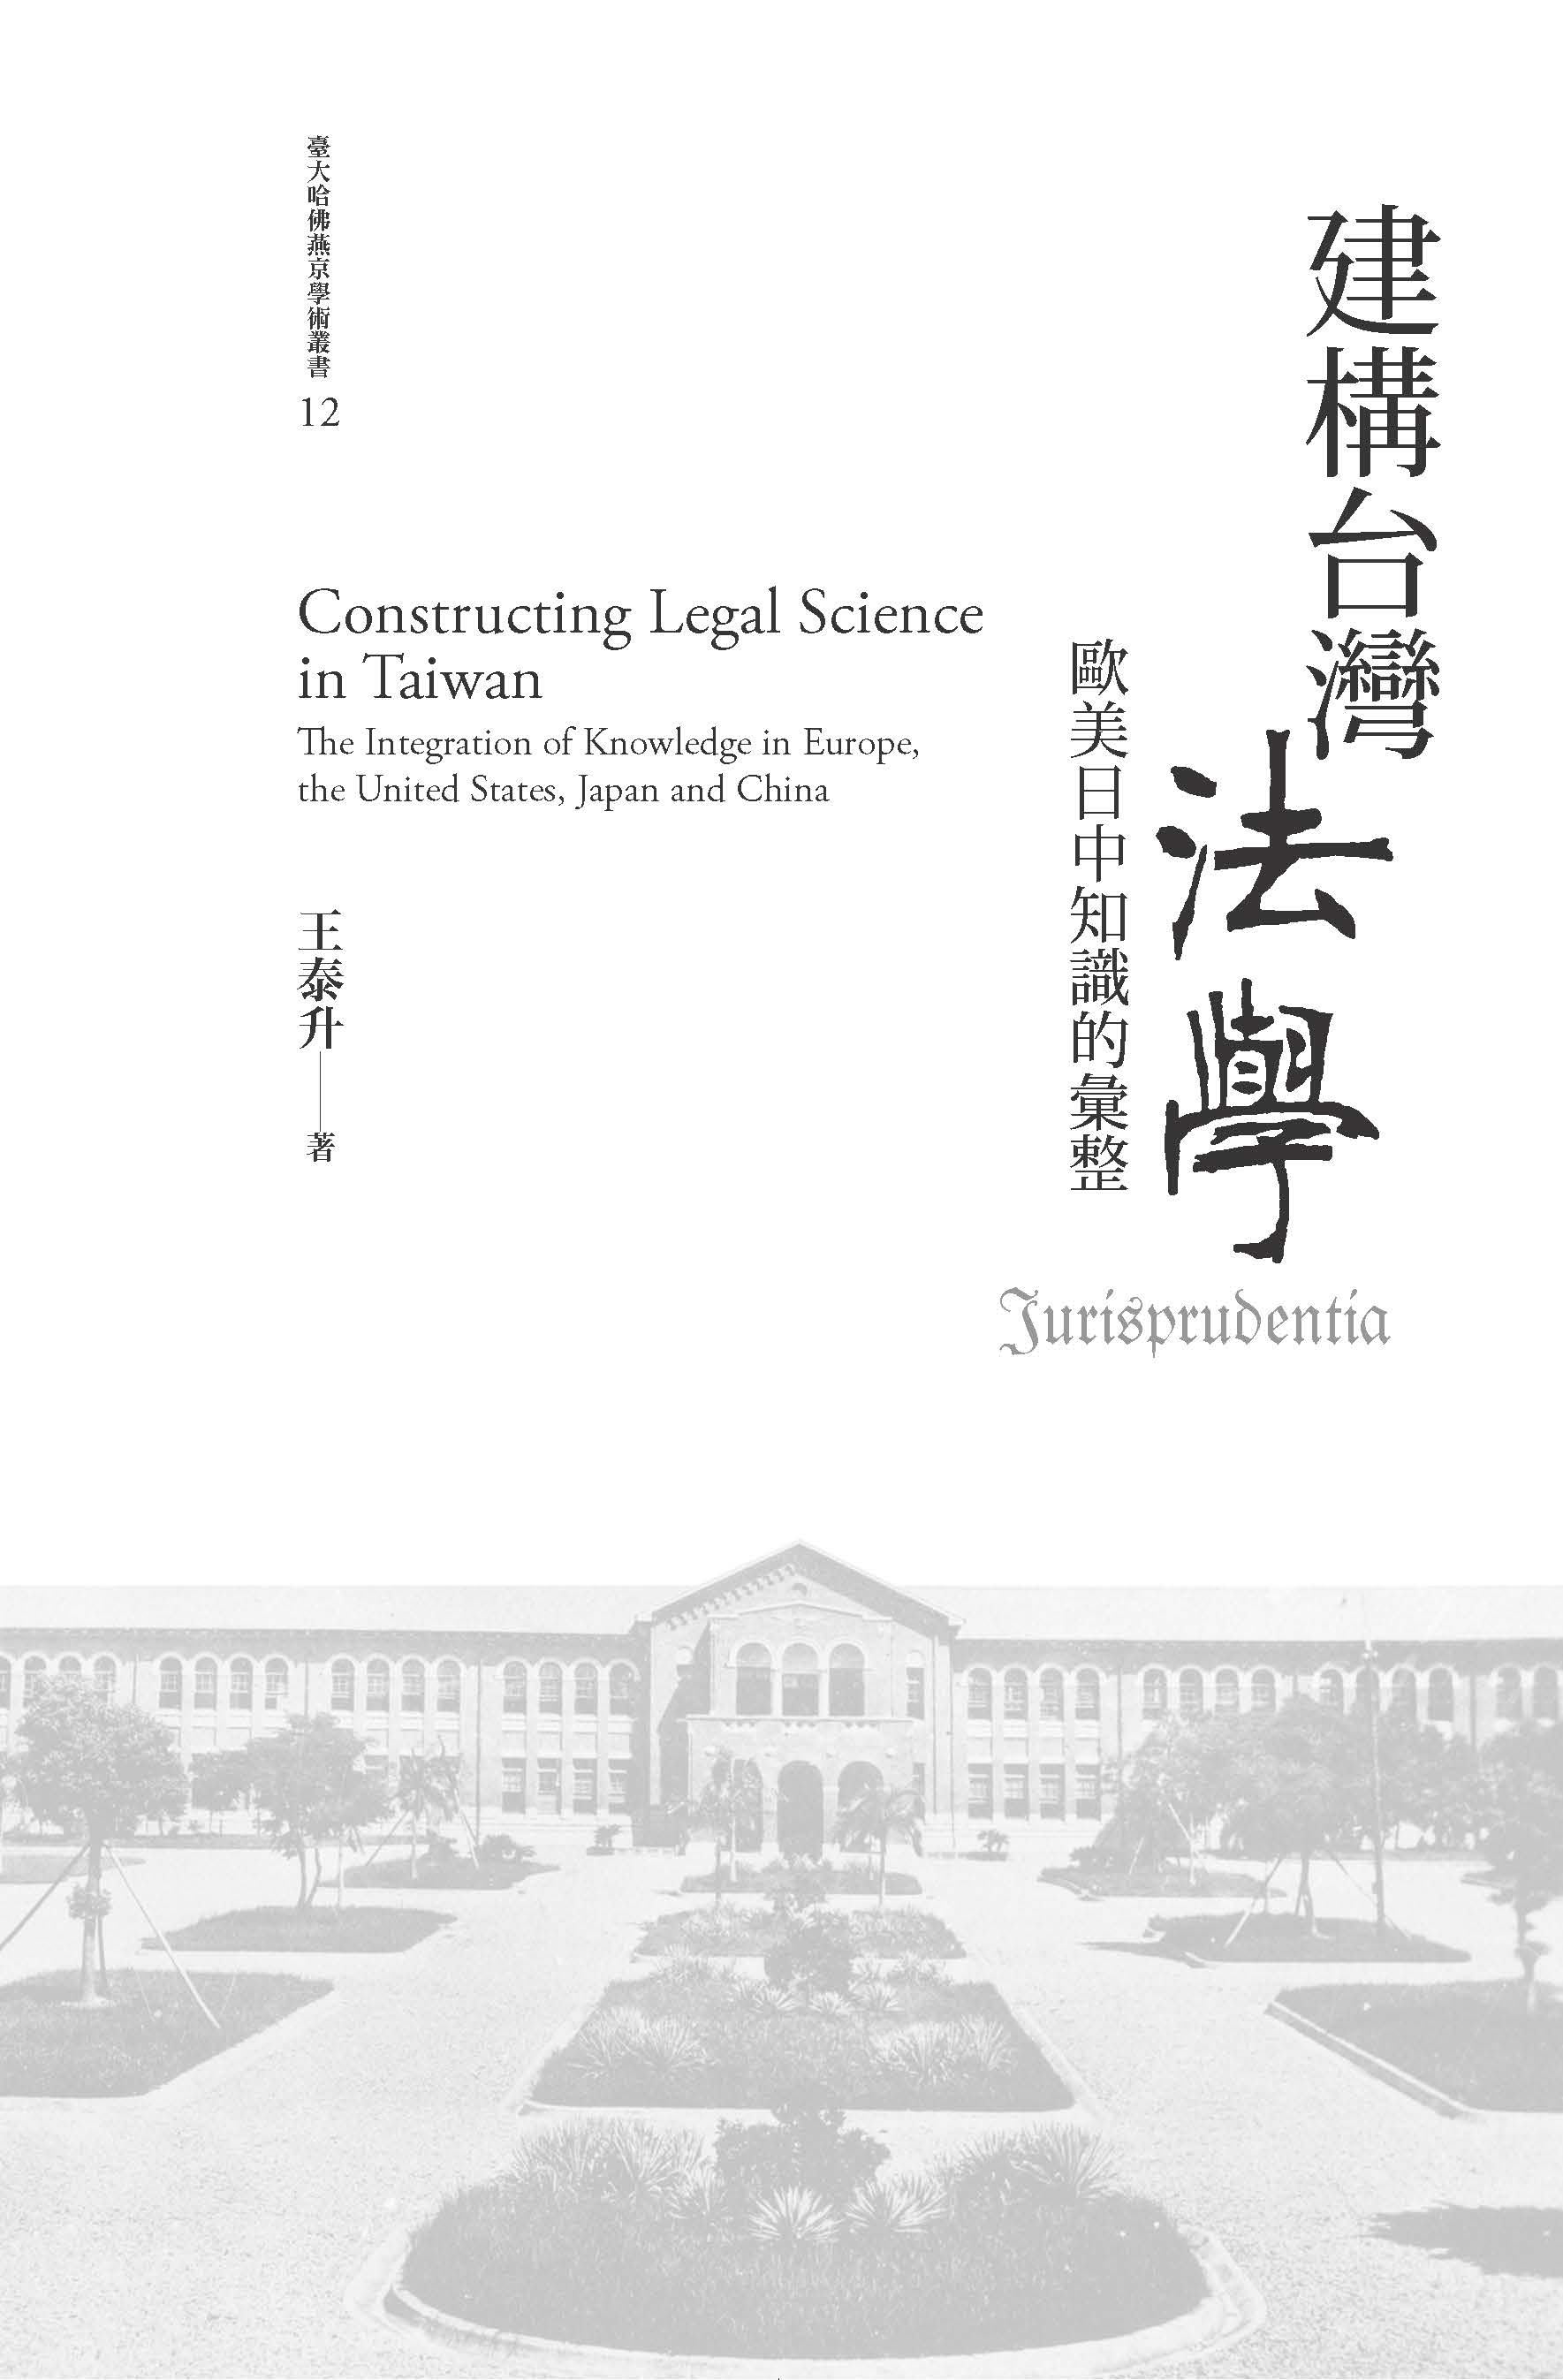 建構台灣法學 : 歐美日中知識的彙整